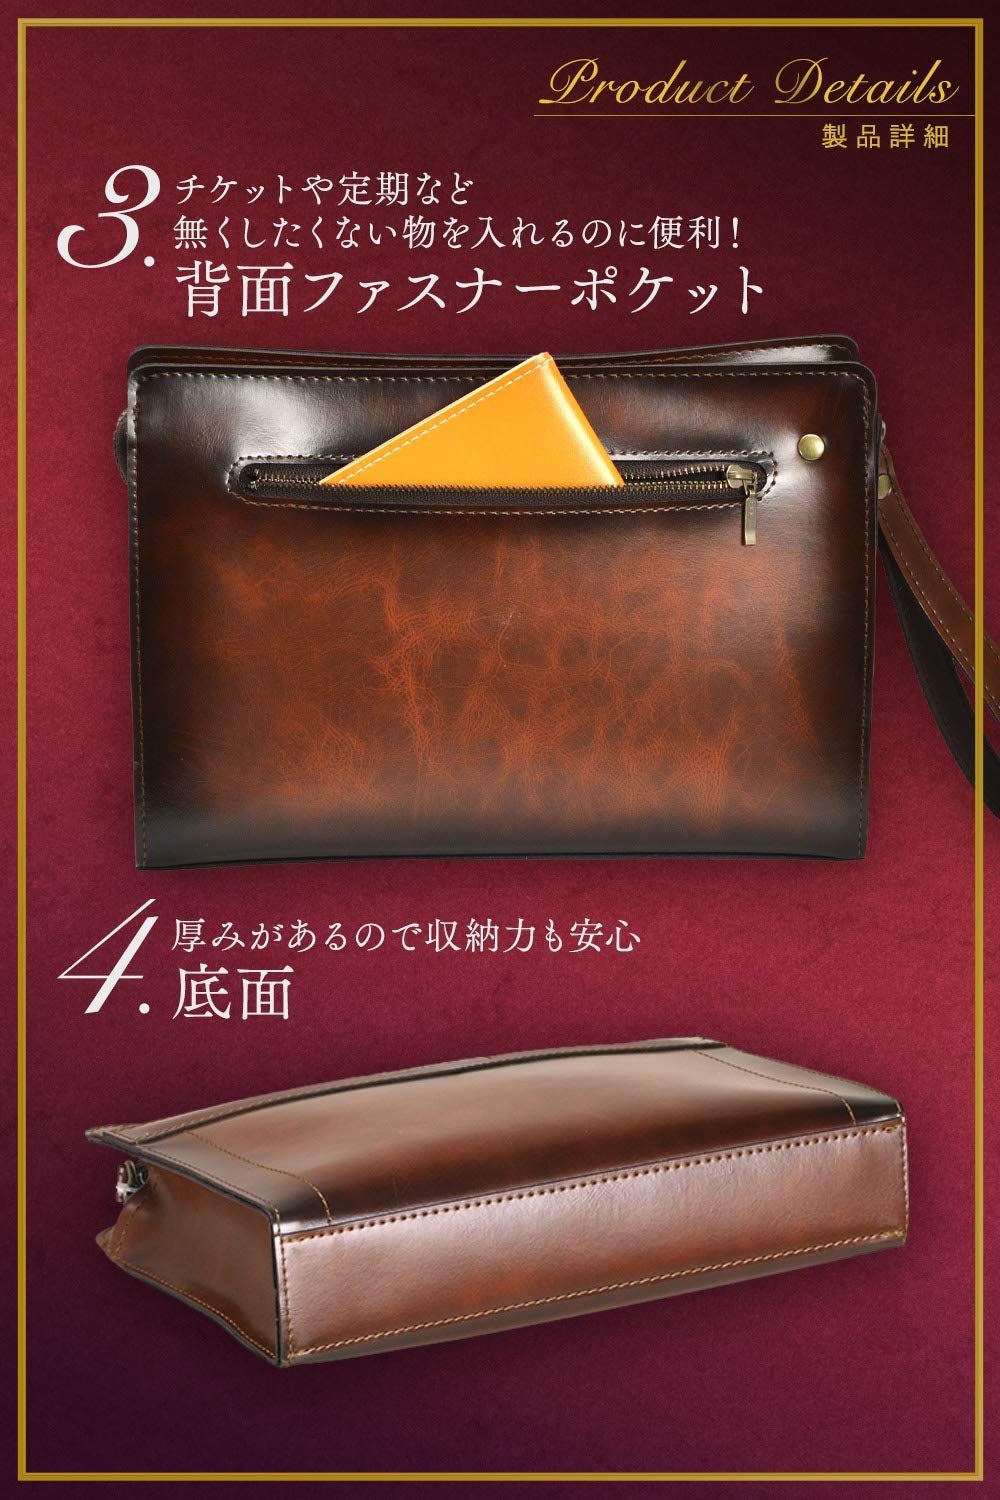 平野鞄 豊岡職人の技 国産 セカンドバッグ メンズ クラッチバッグ 日本